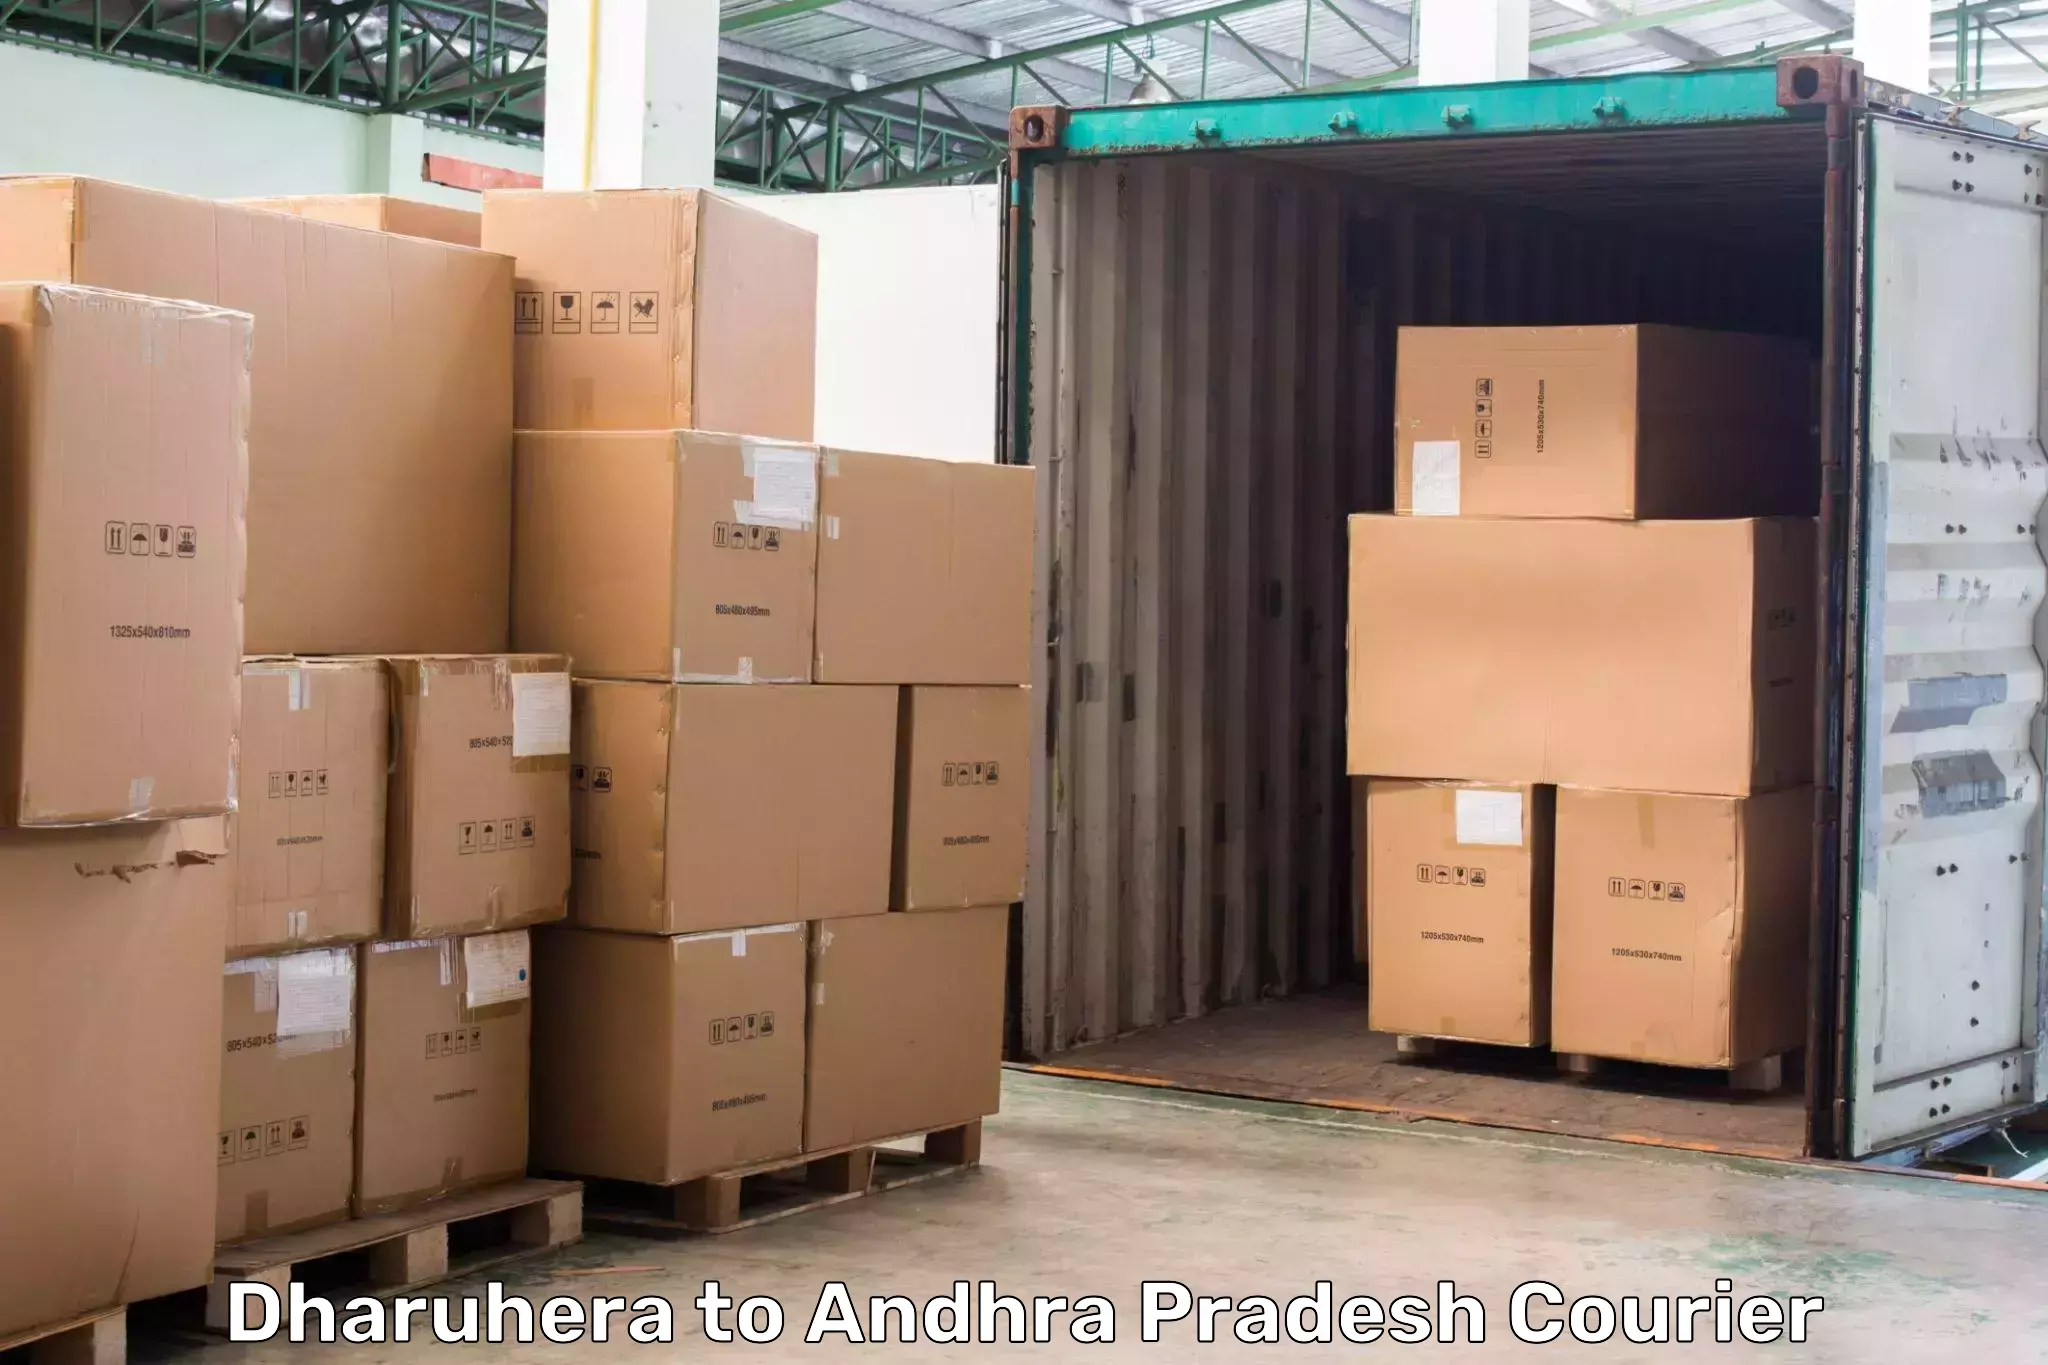 Global shipping networks Dharuhera to Yerravaram